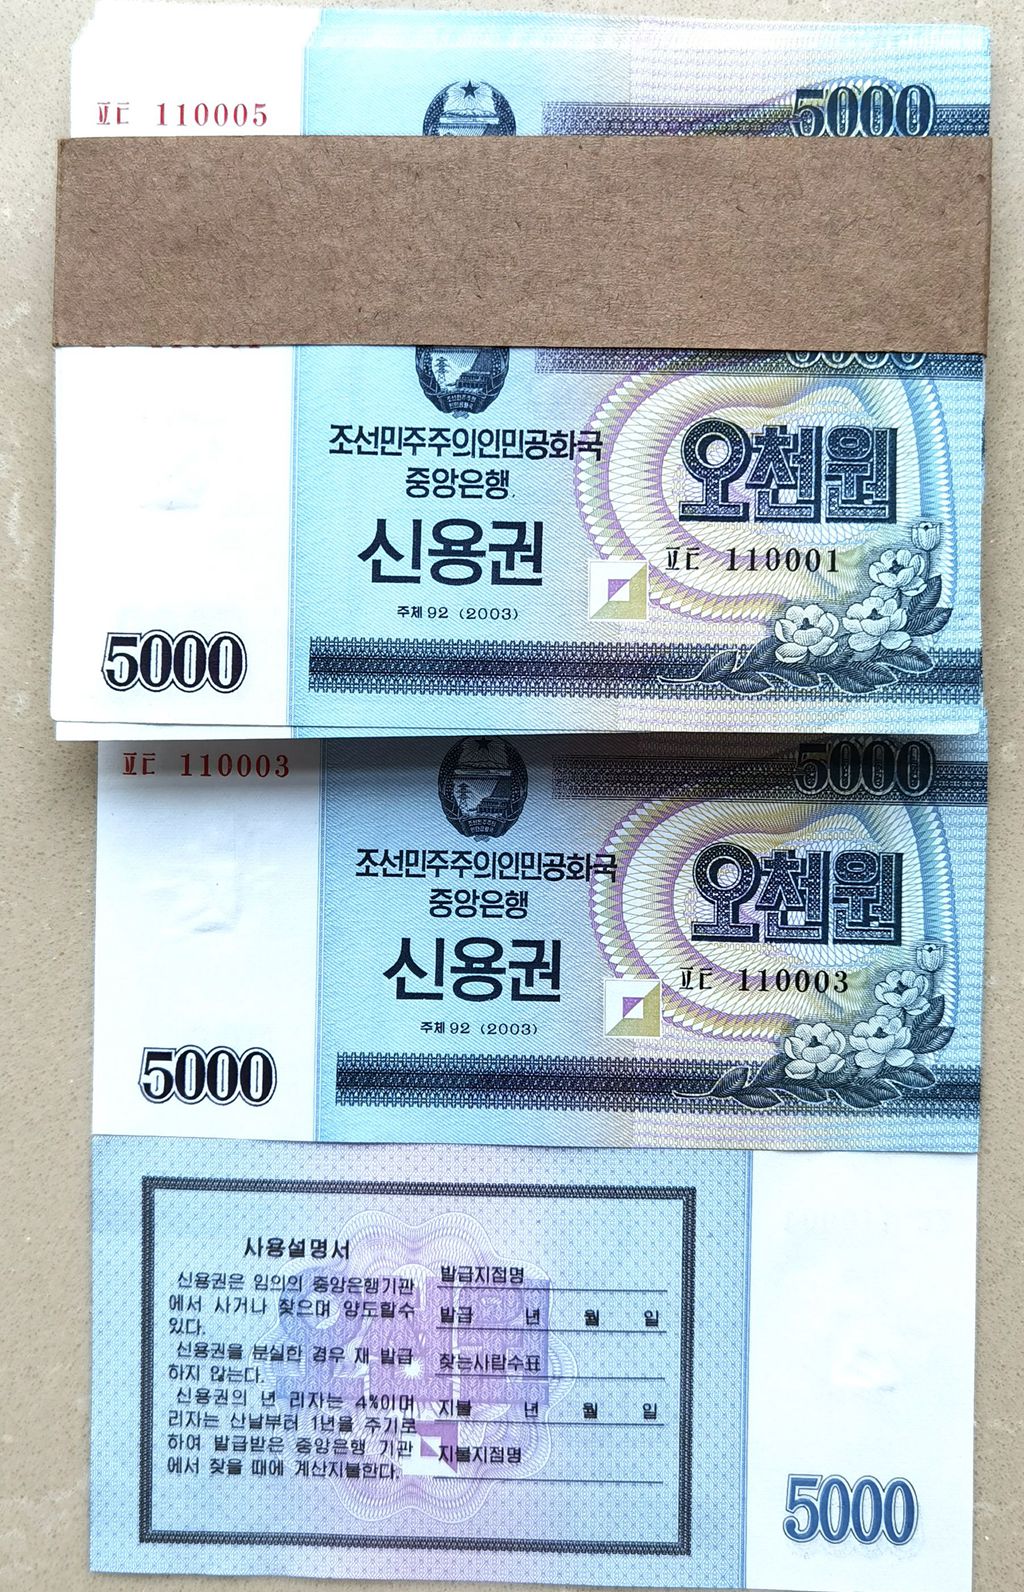 L1251, Korea 4% Cashier's Cheque (Banknotes) 5000 Wons, 100 Pcs, 2003